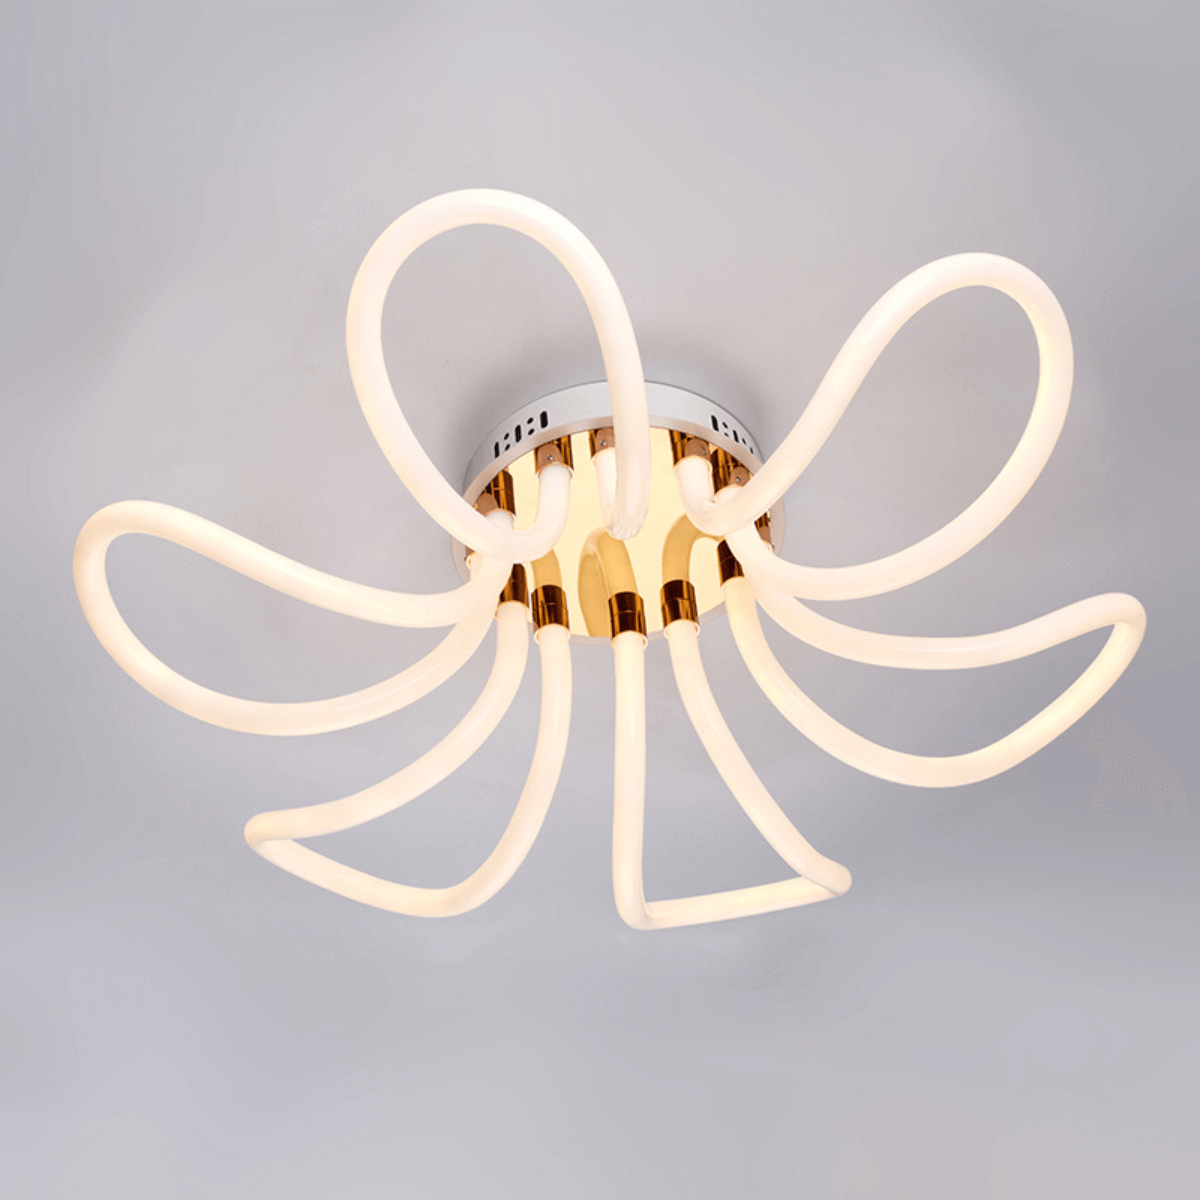 Rio-chandeliers-golden-light